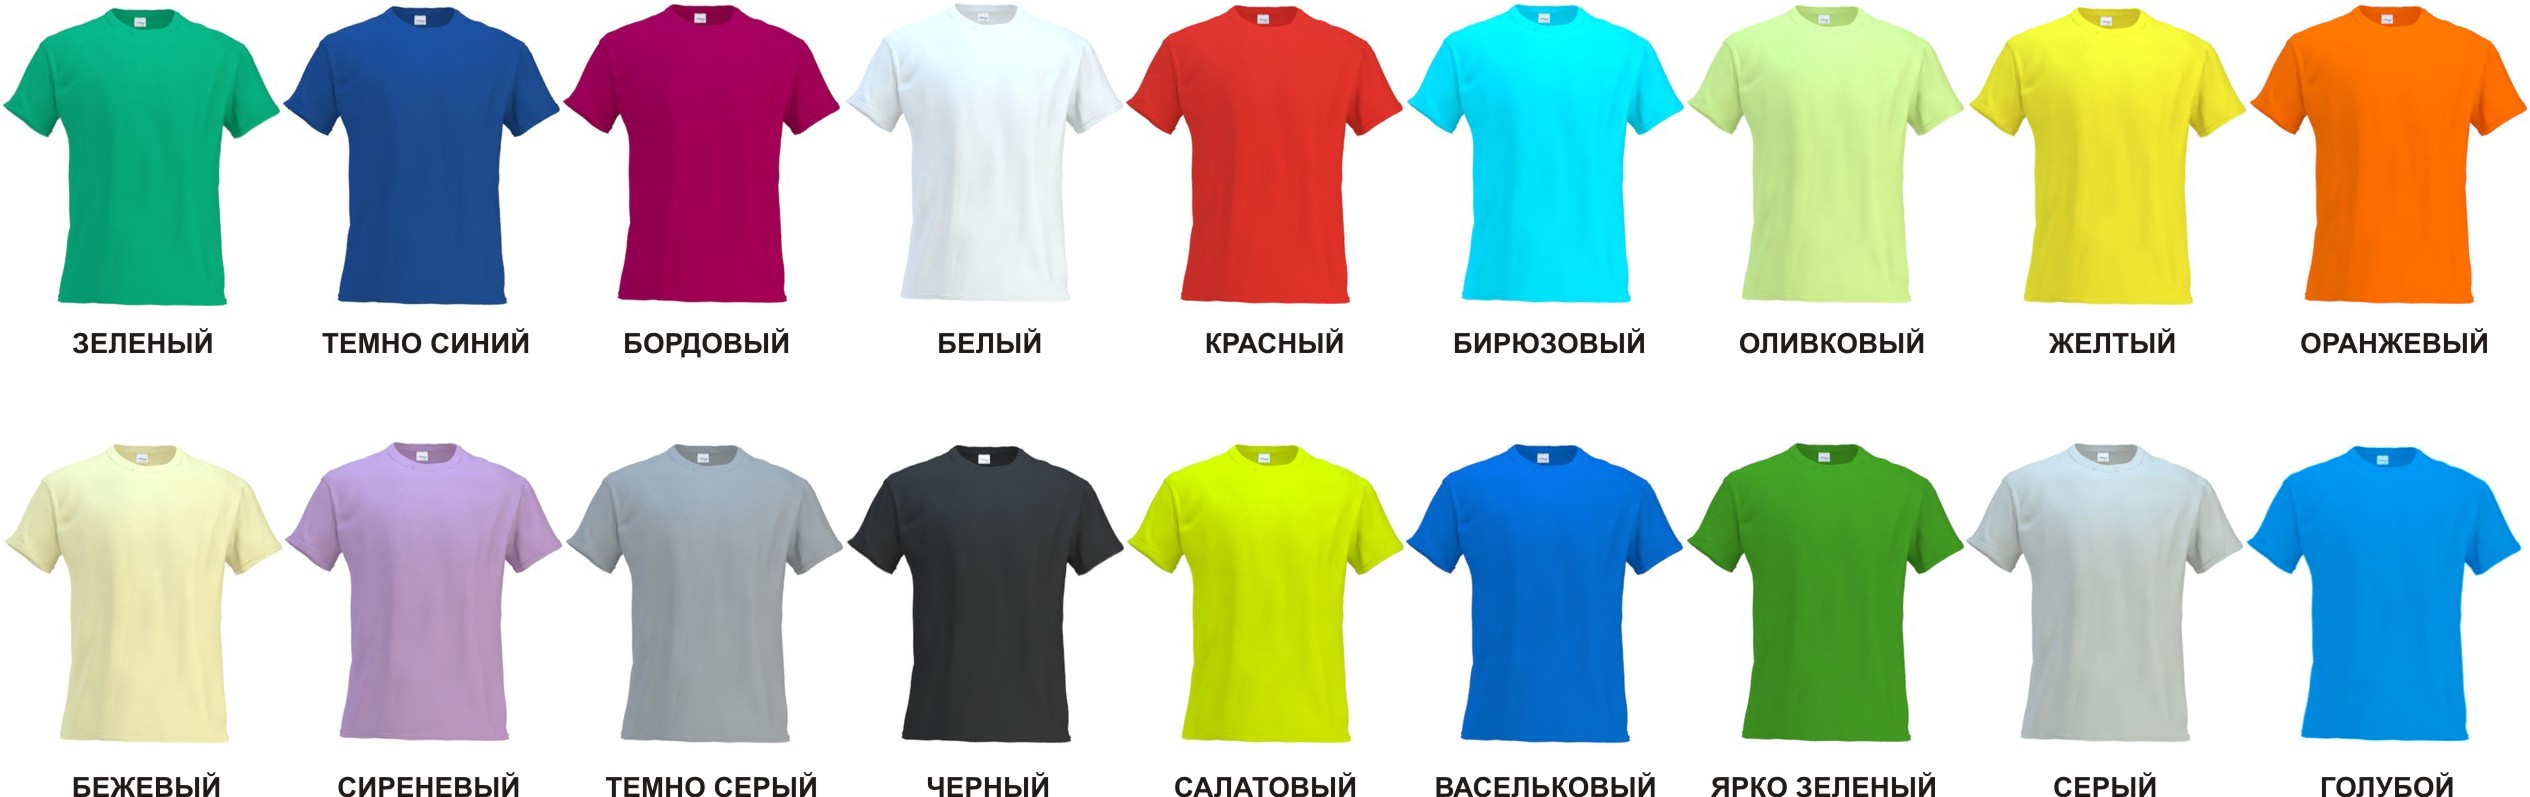 Разнообразие футболок: виды, стили и модели